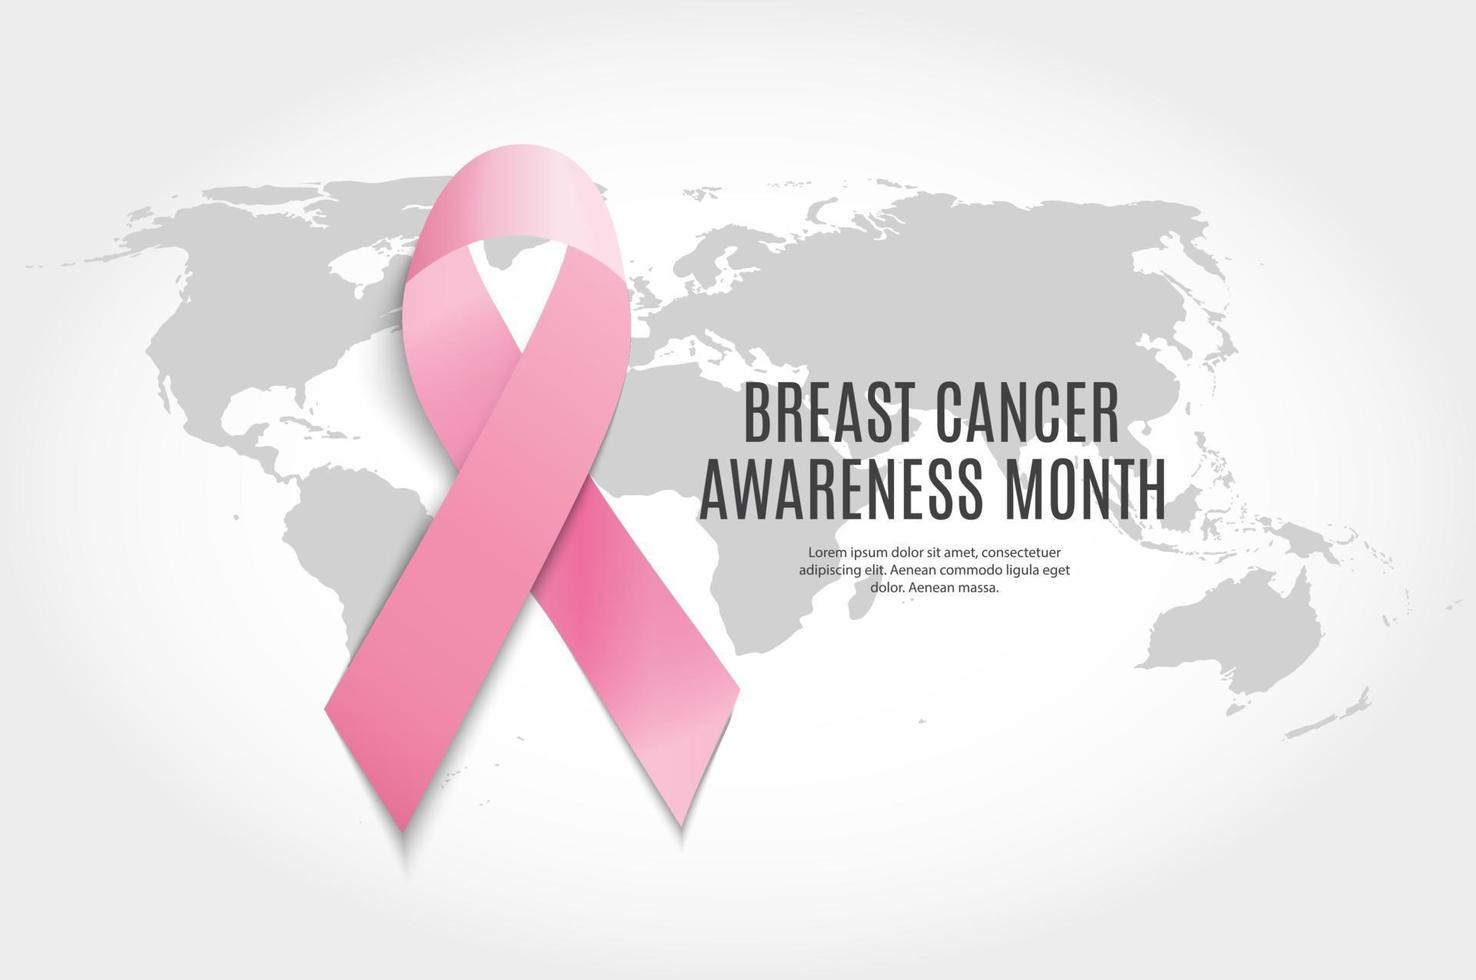 sfondo del nastro rosa del mese di consapevolezza del cancro al seno vettore